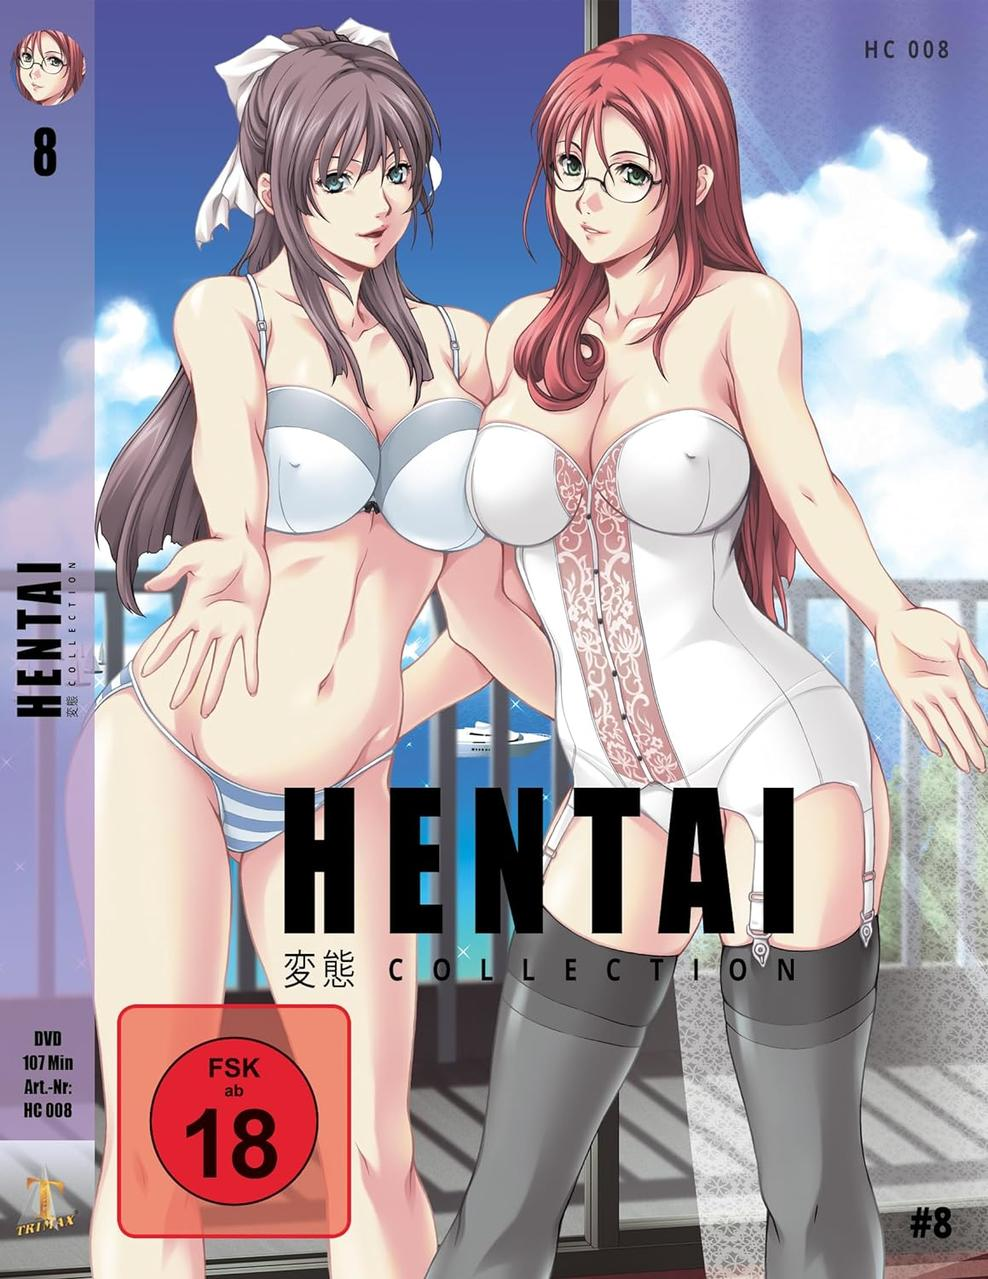 Hentai Collection 08 Vol. DVD